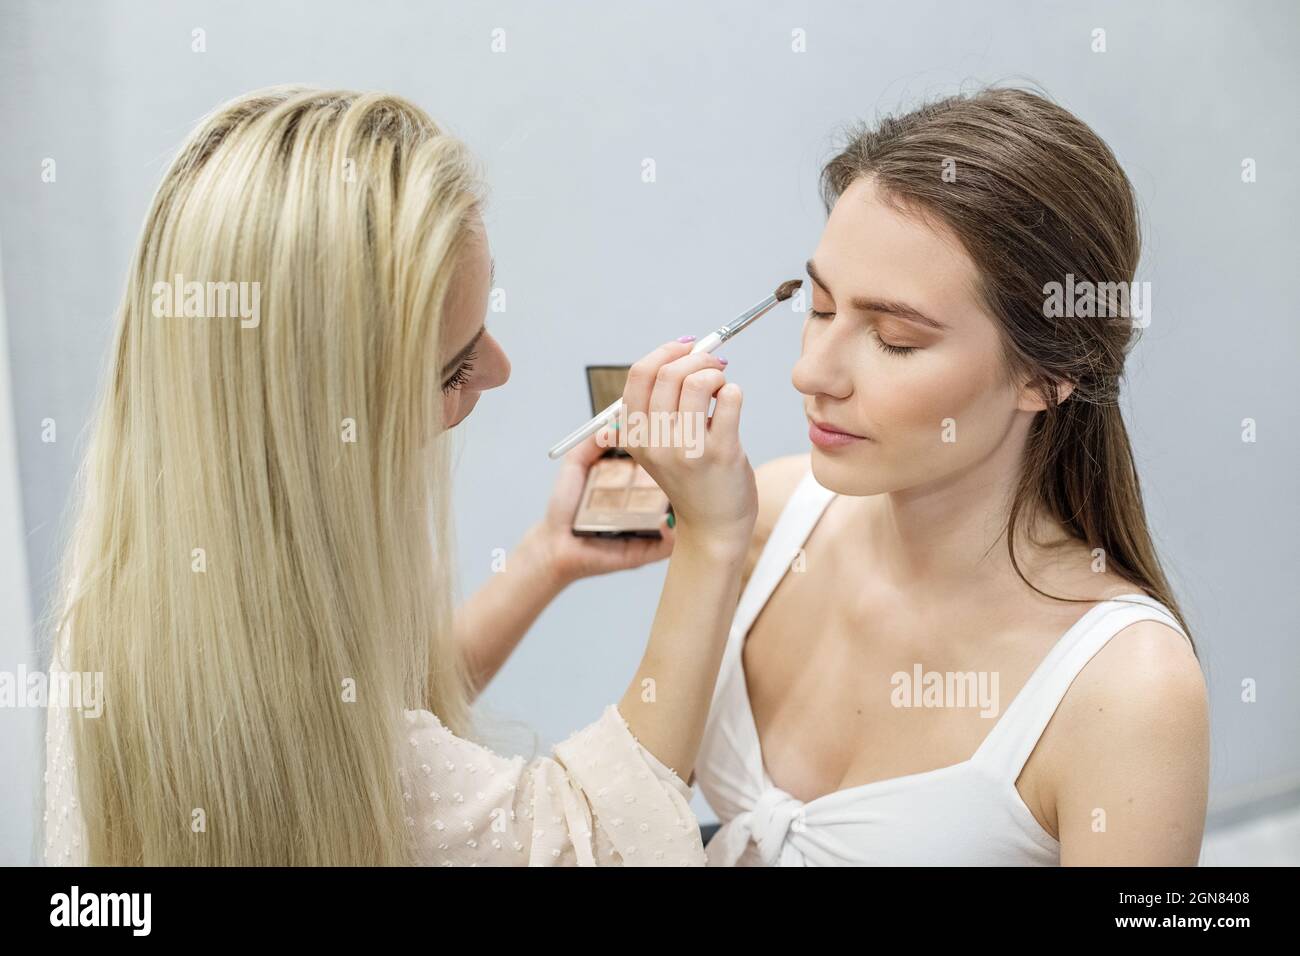 Professionelle Make-up-Künstler macht Make-up. Frau arbeitet in einem Friseursalon. Kleinunternehmen. Arbeitsplatz des Make-up-Künstlers. Stockfoto